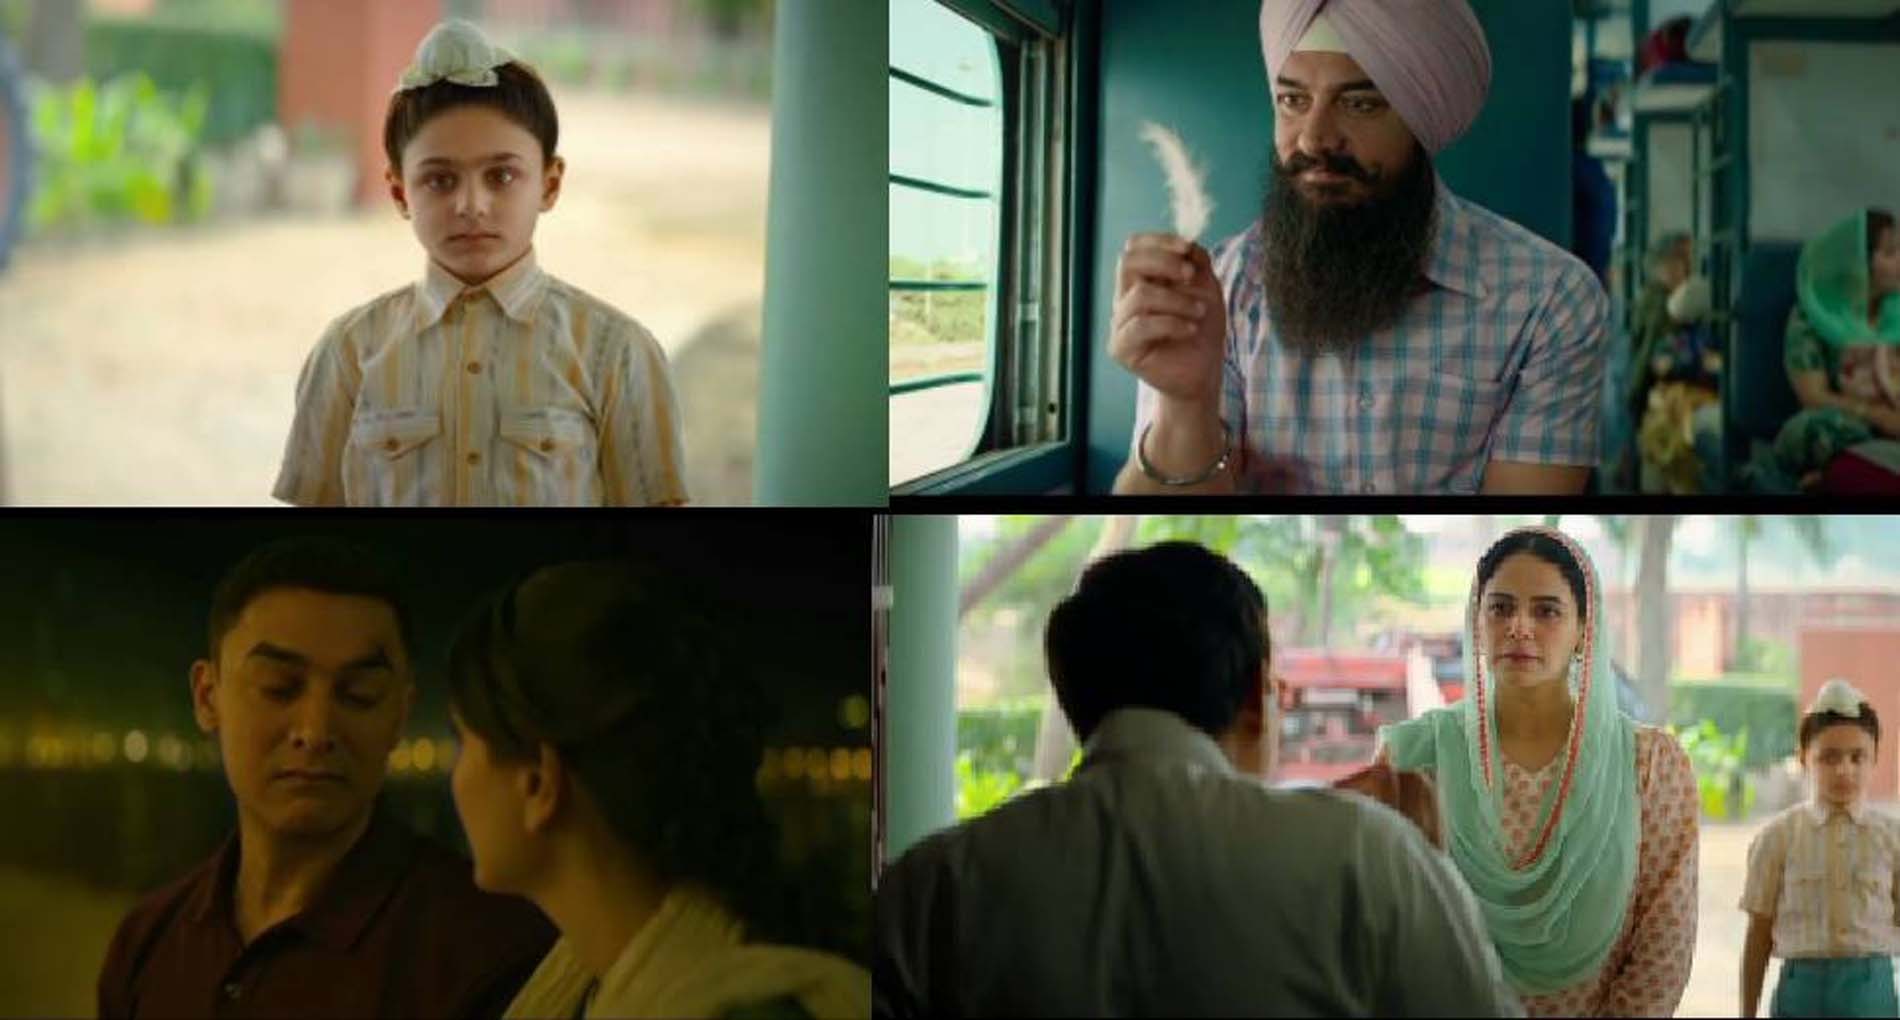 Laal Singh Chaddha Trailer: Aamir Khan की फिल्म ‘लाल सिंह चड्ढा’ का ट्रेलर रिलीज, आम आदमी के दिखे कई रंग